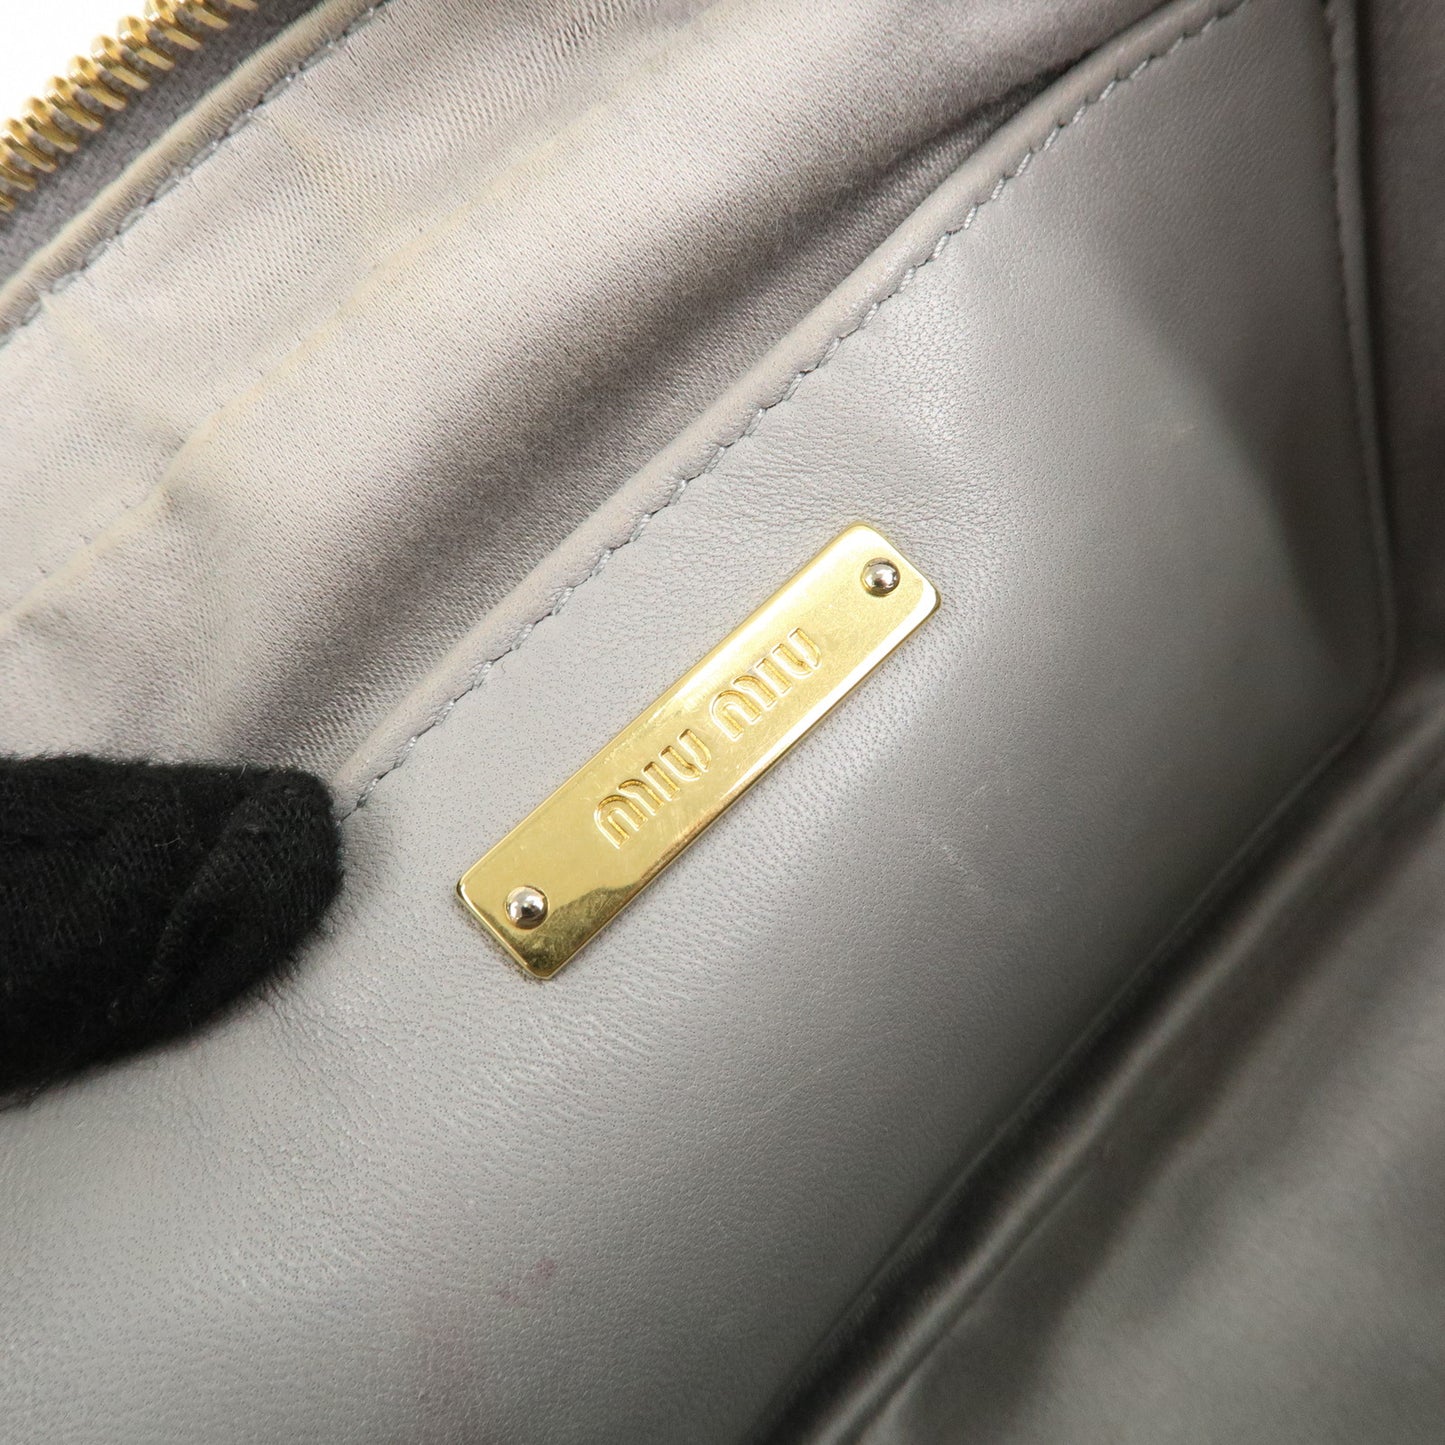 MIU MIU Matelasse Leather Chain Shoulder Bag Gray